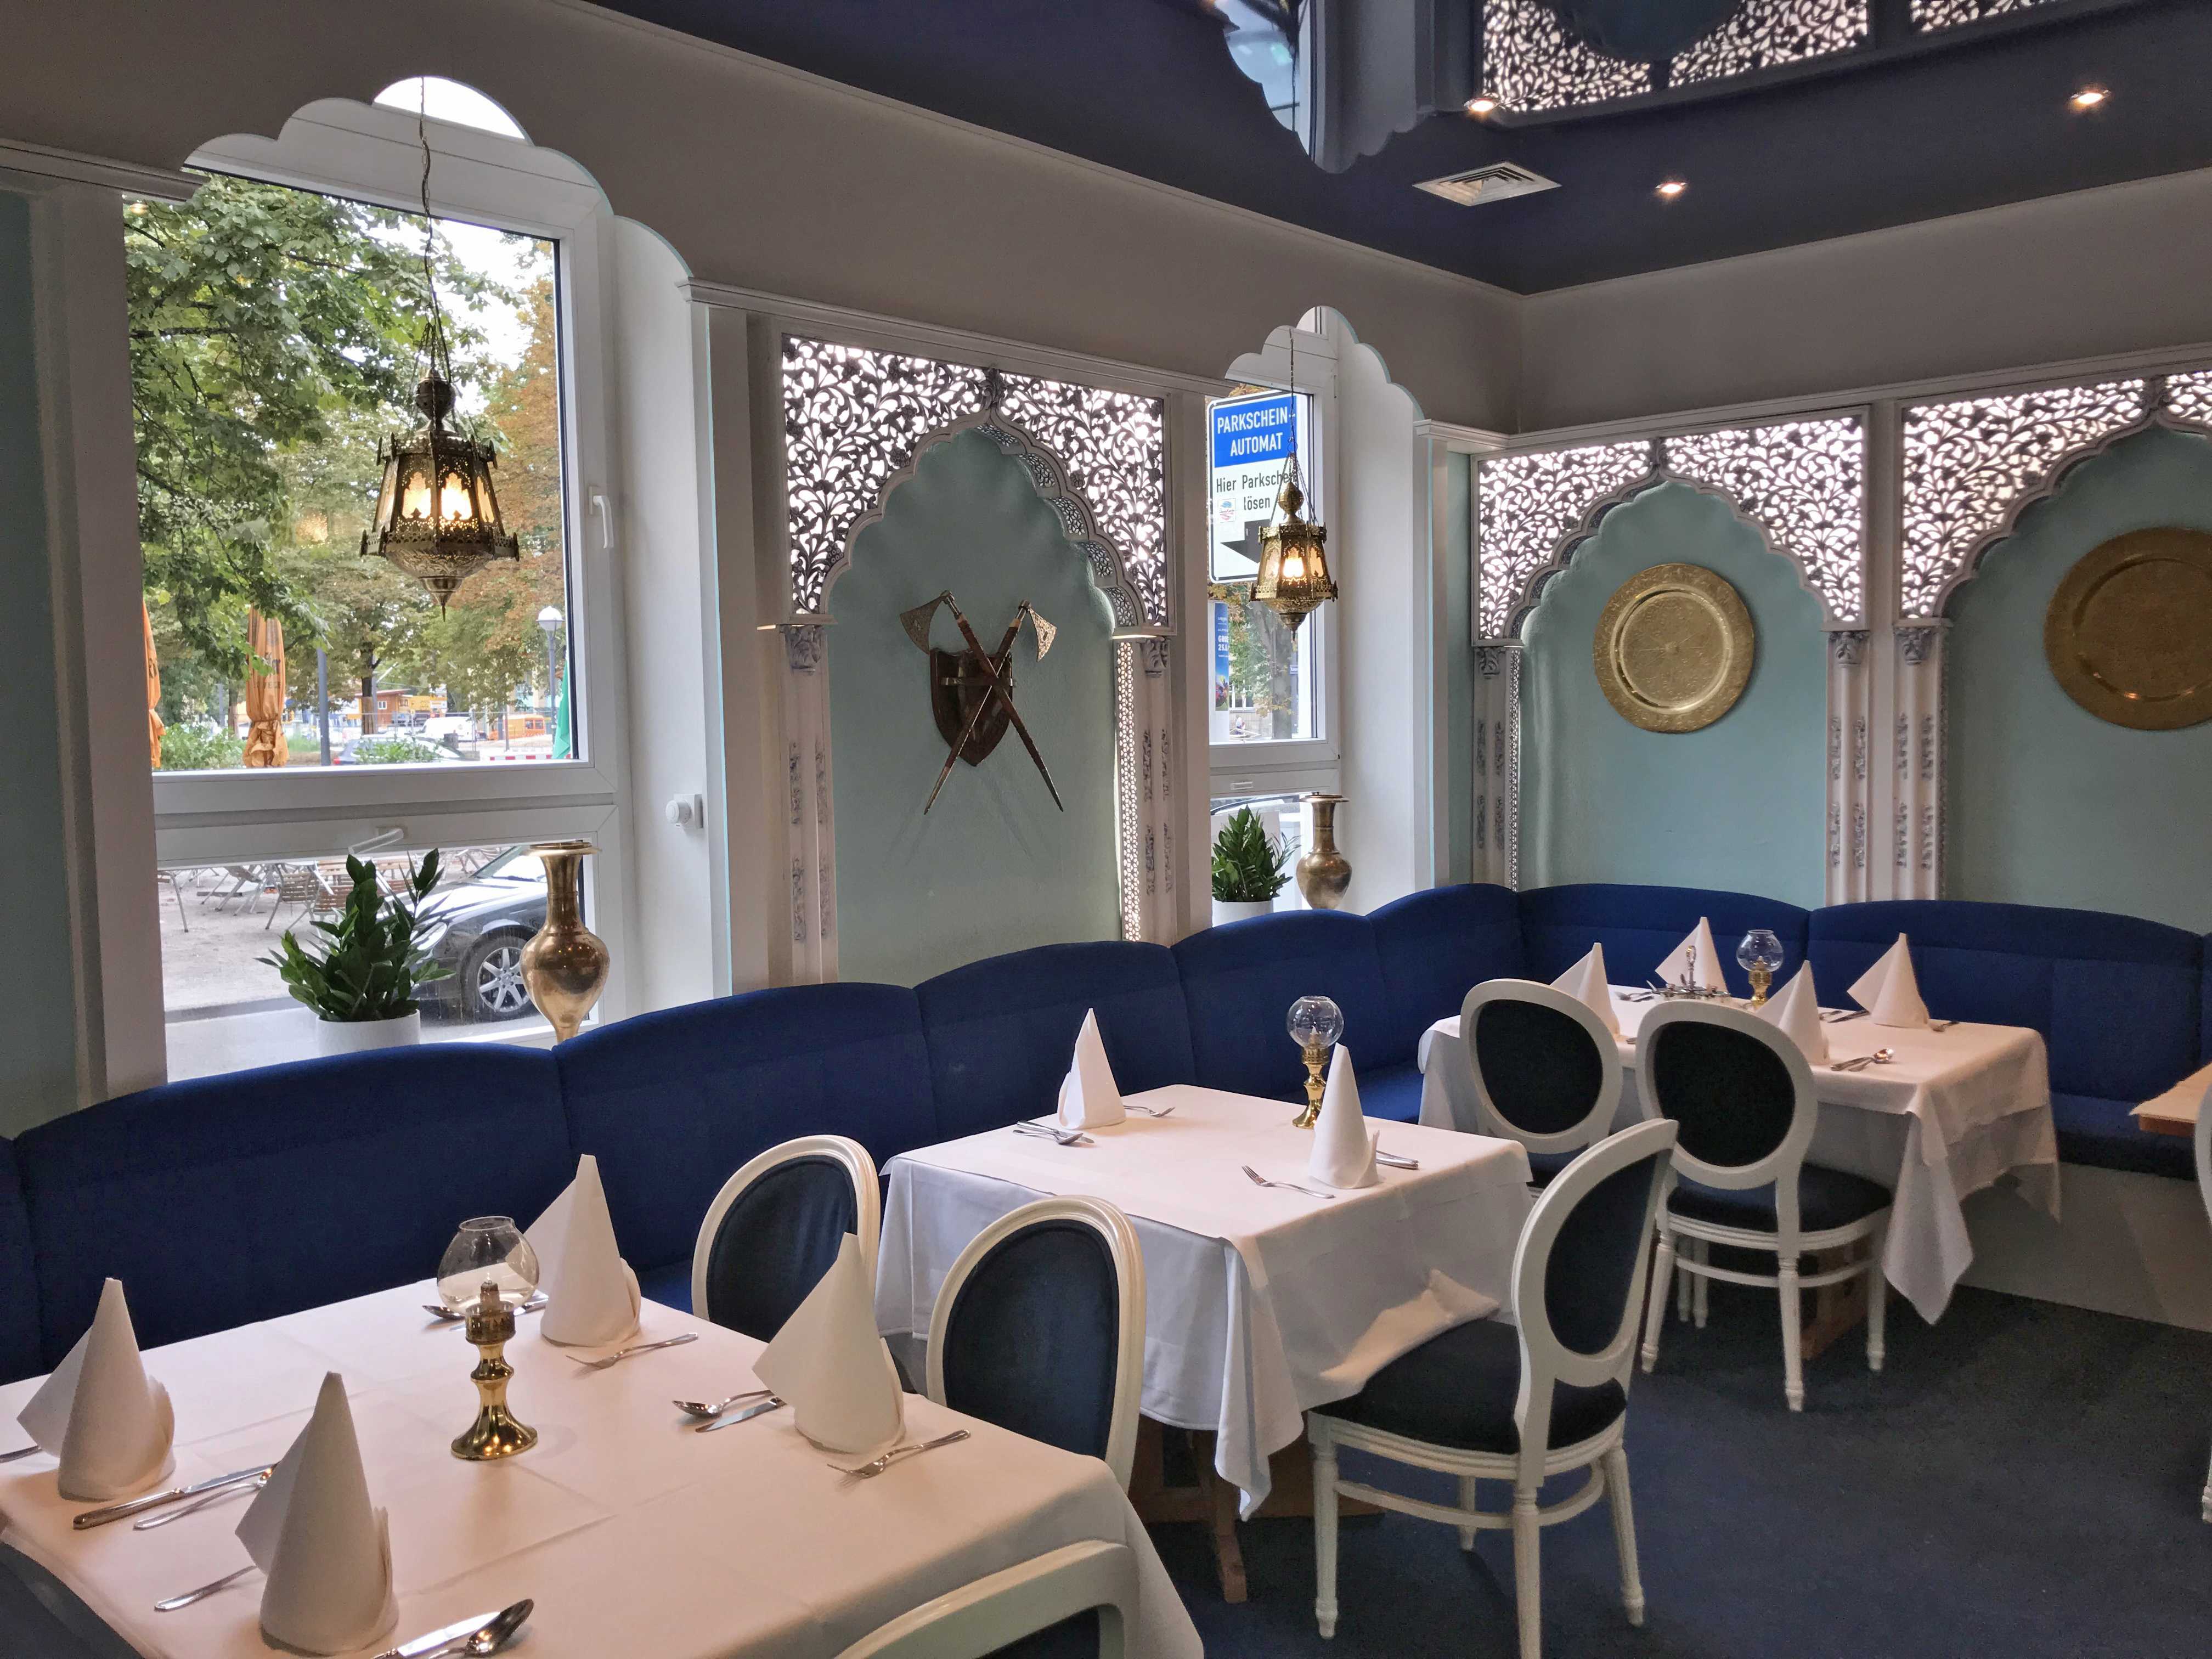 Gastronomiemöbel vom Tischler in blau-weißem Design angefertigt